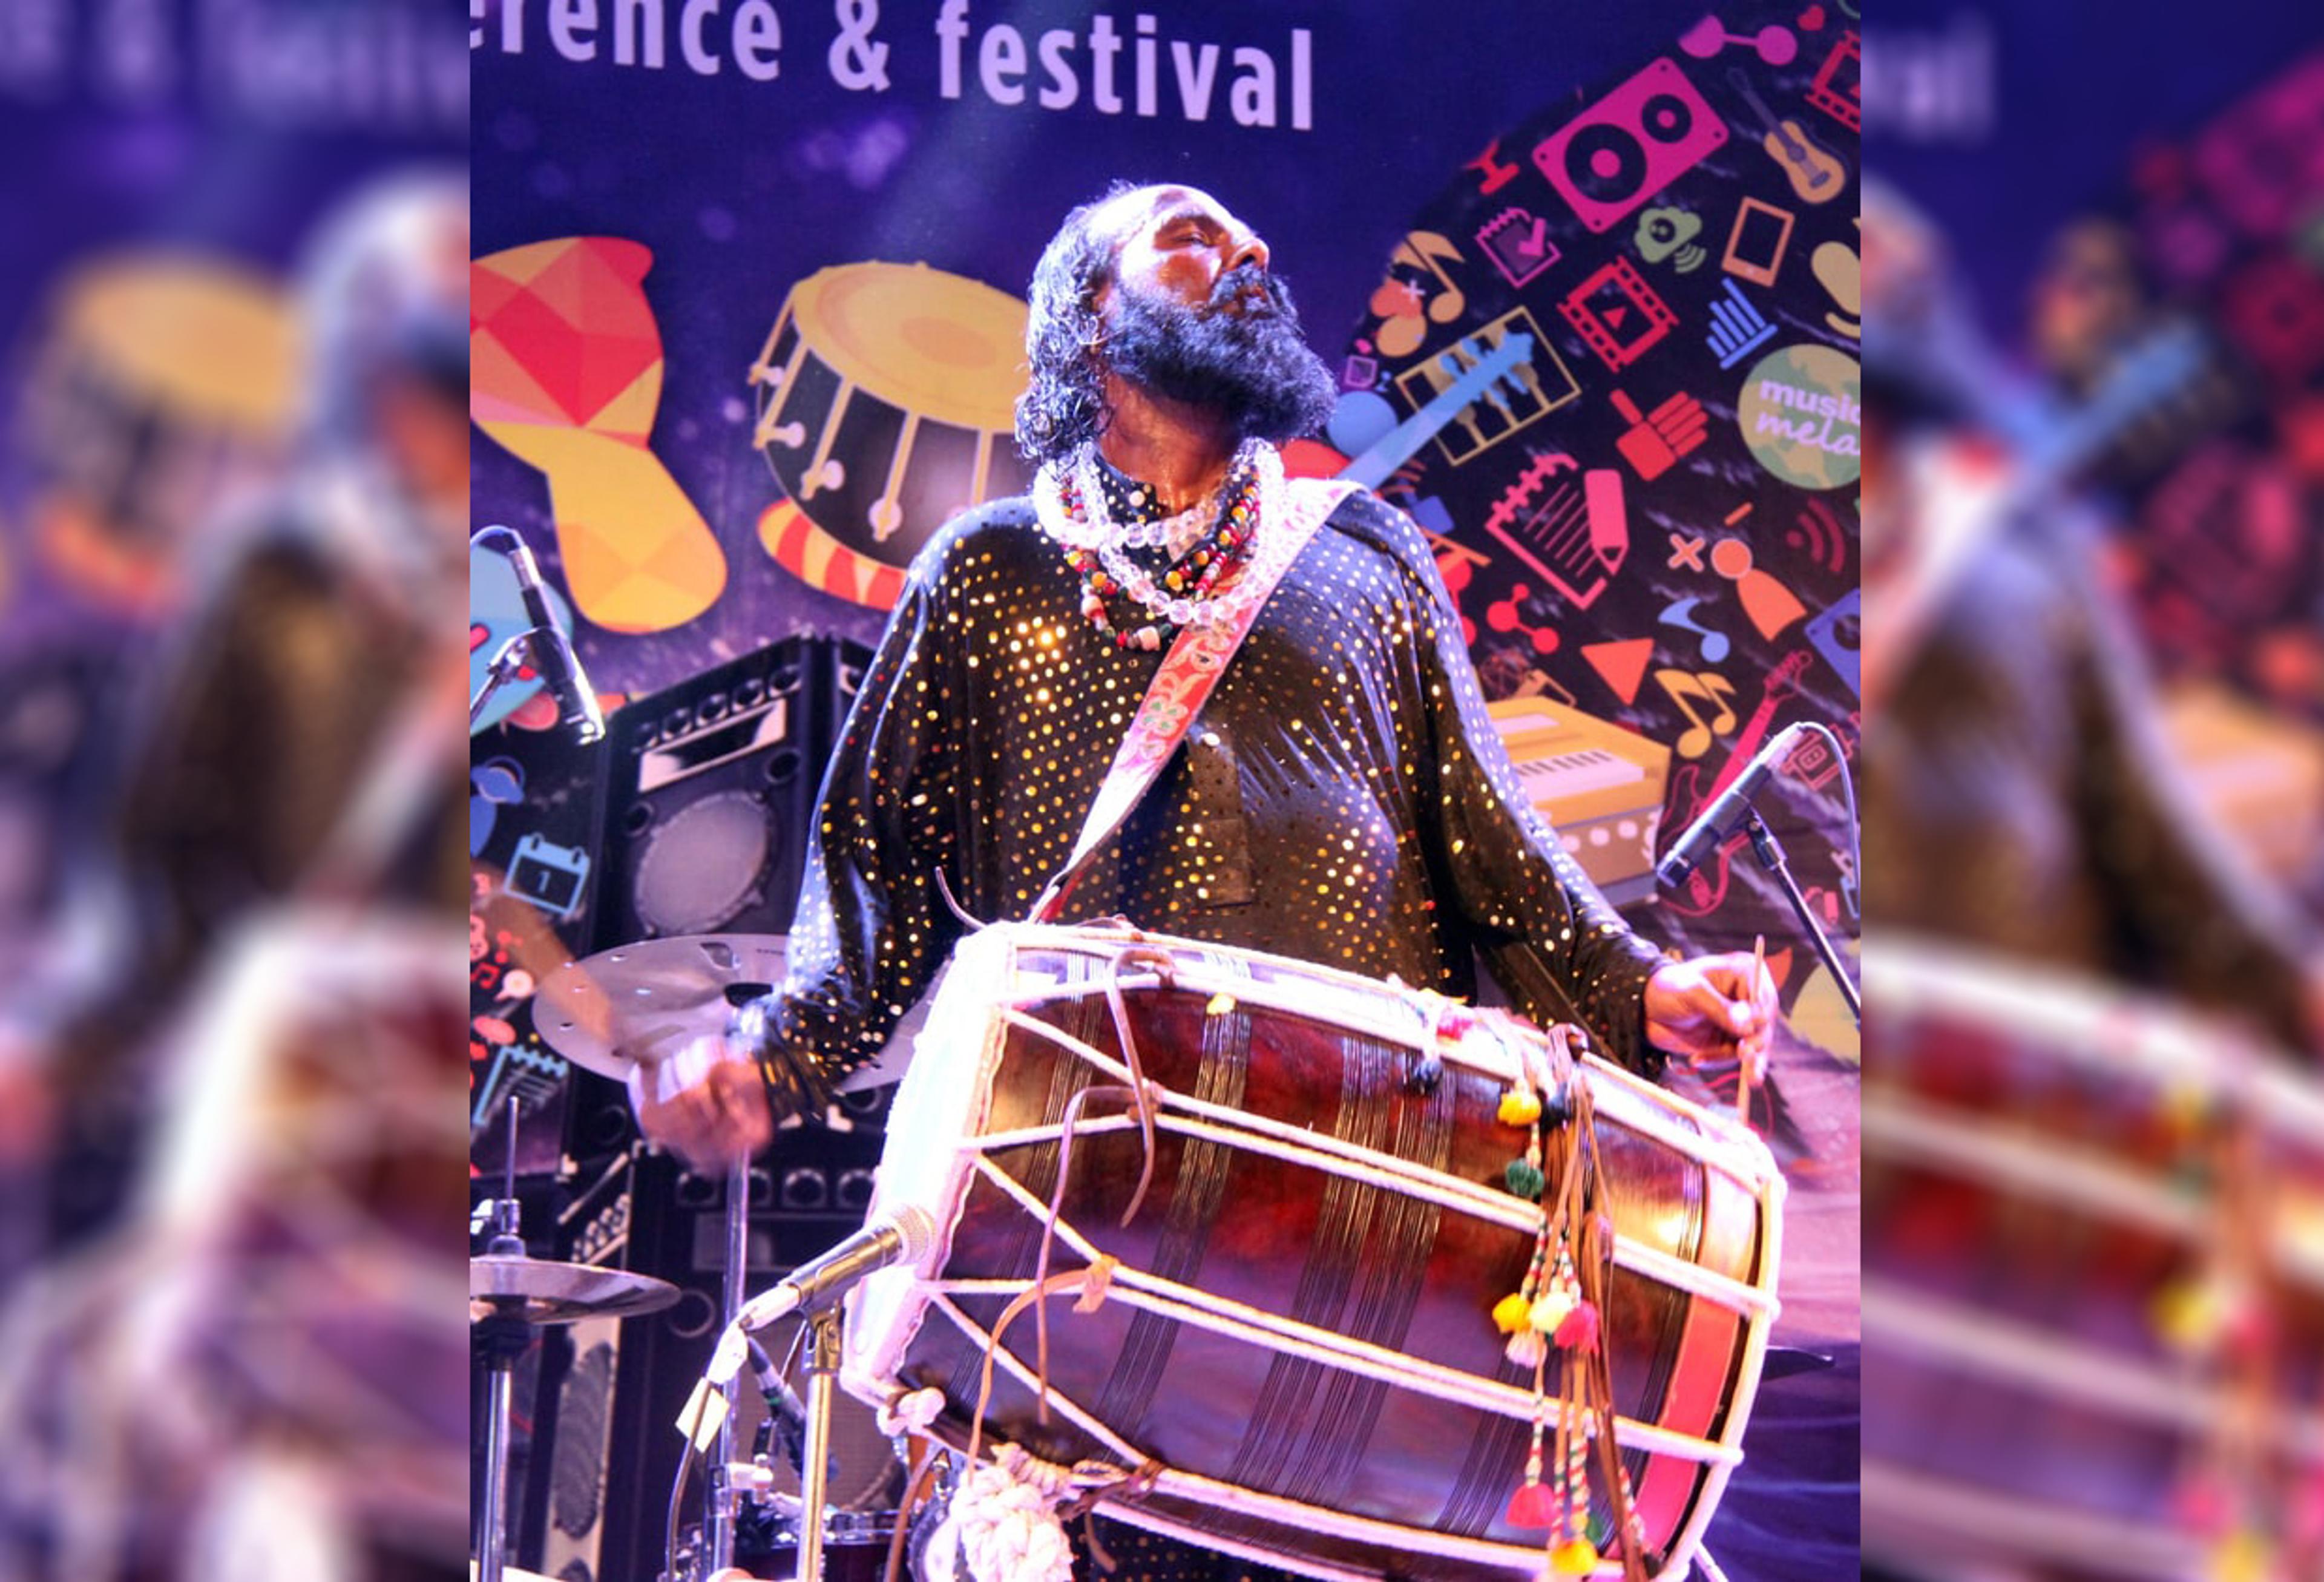 Førde Festival für traditionelle und Weltmusik